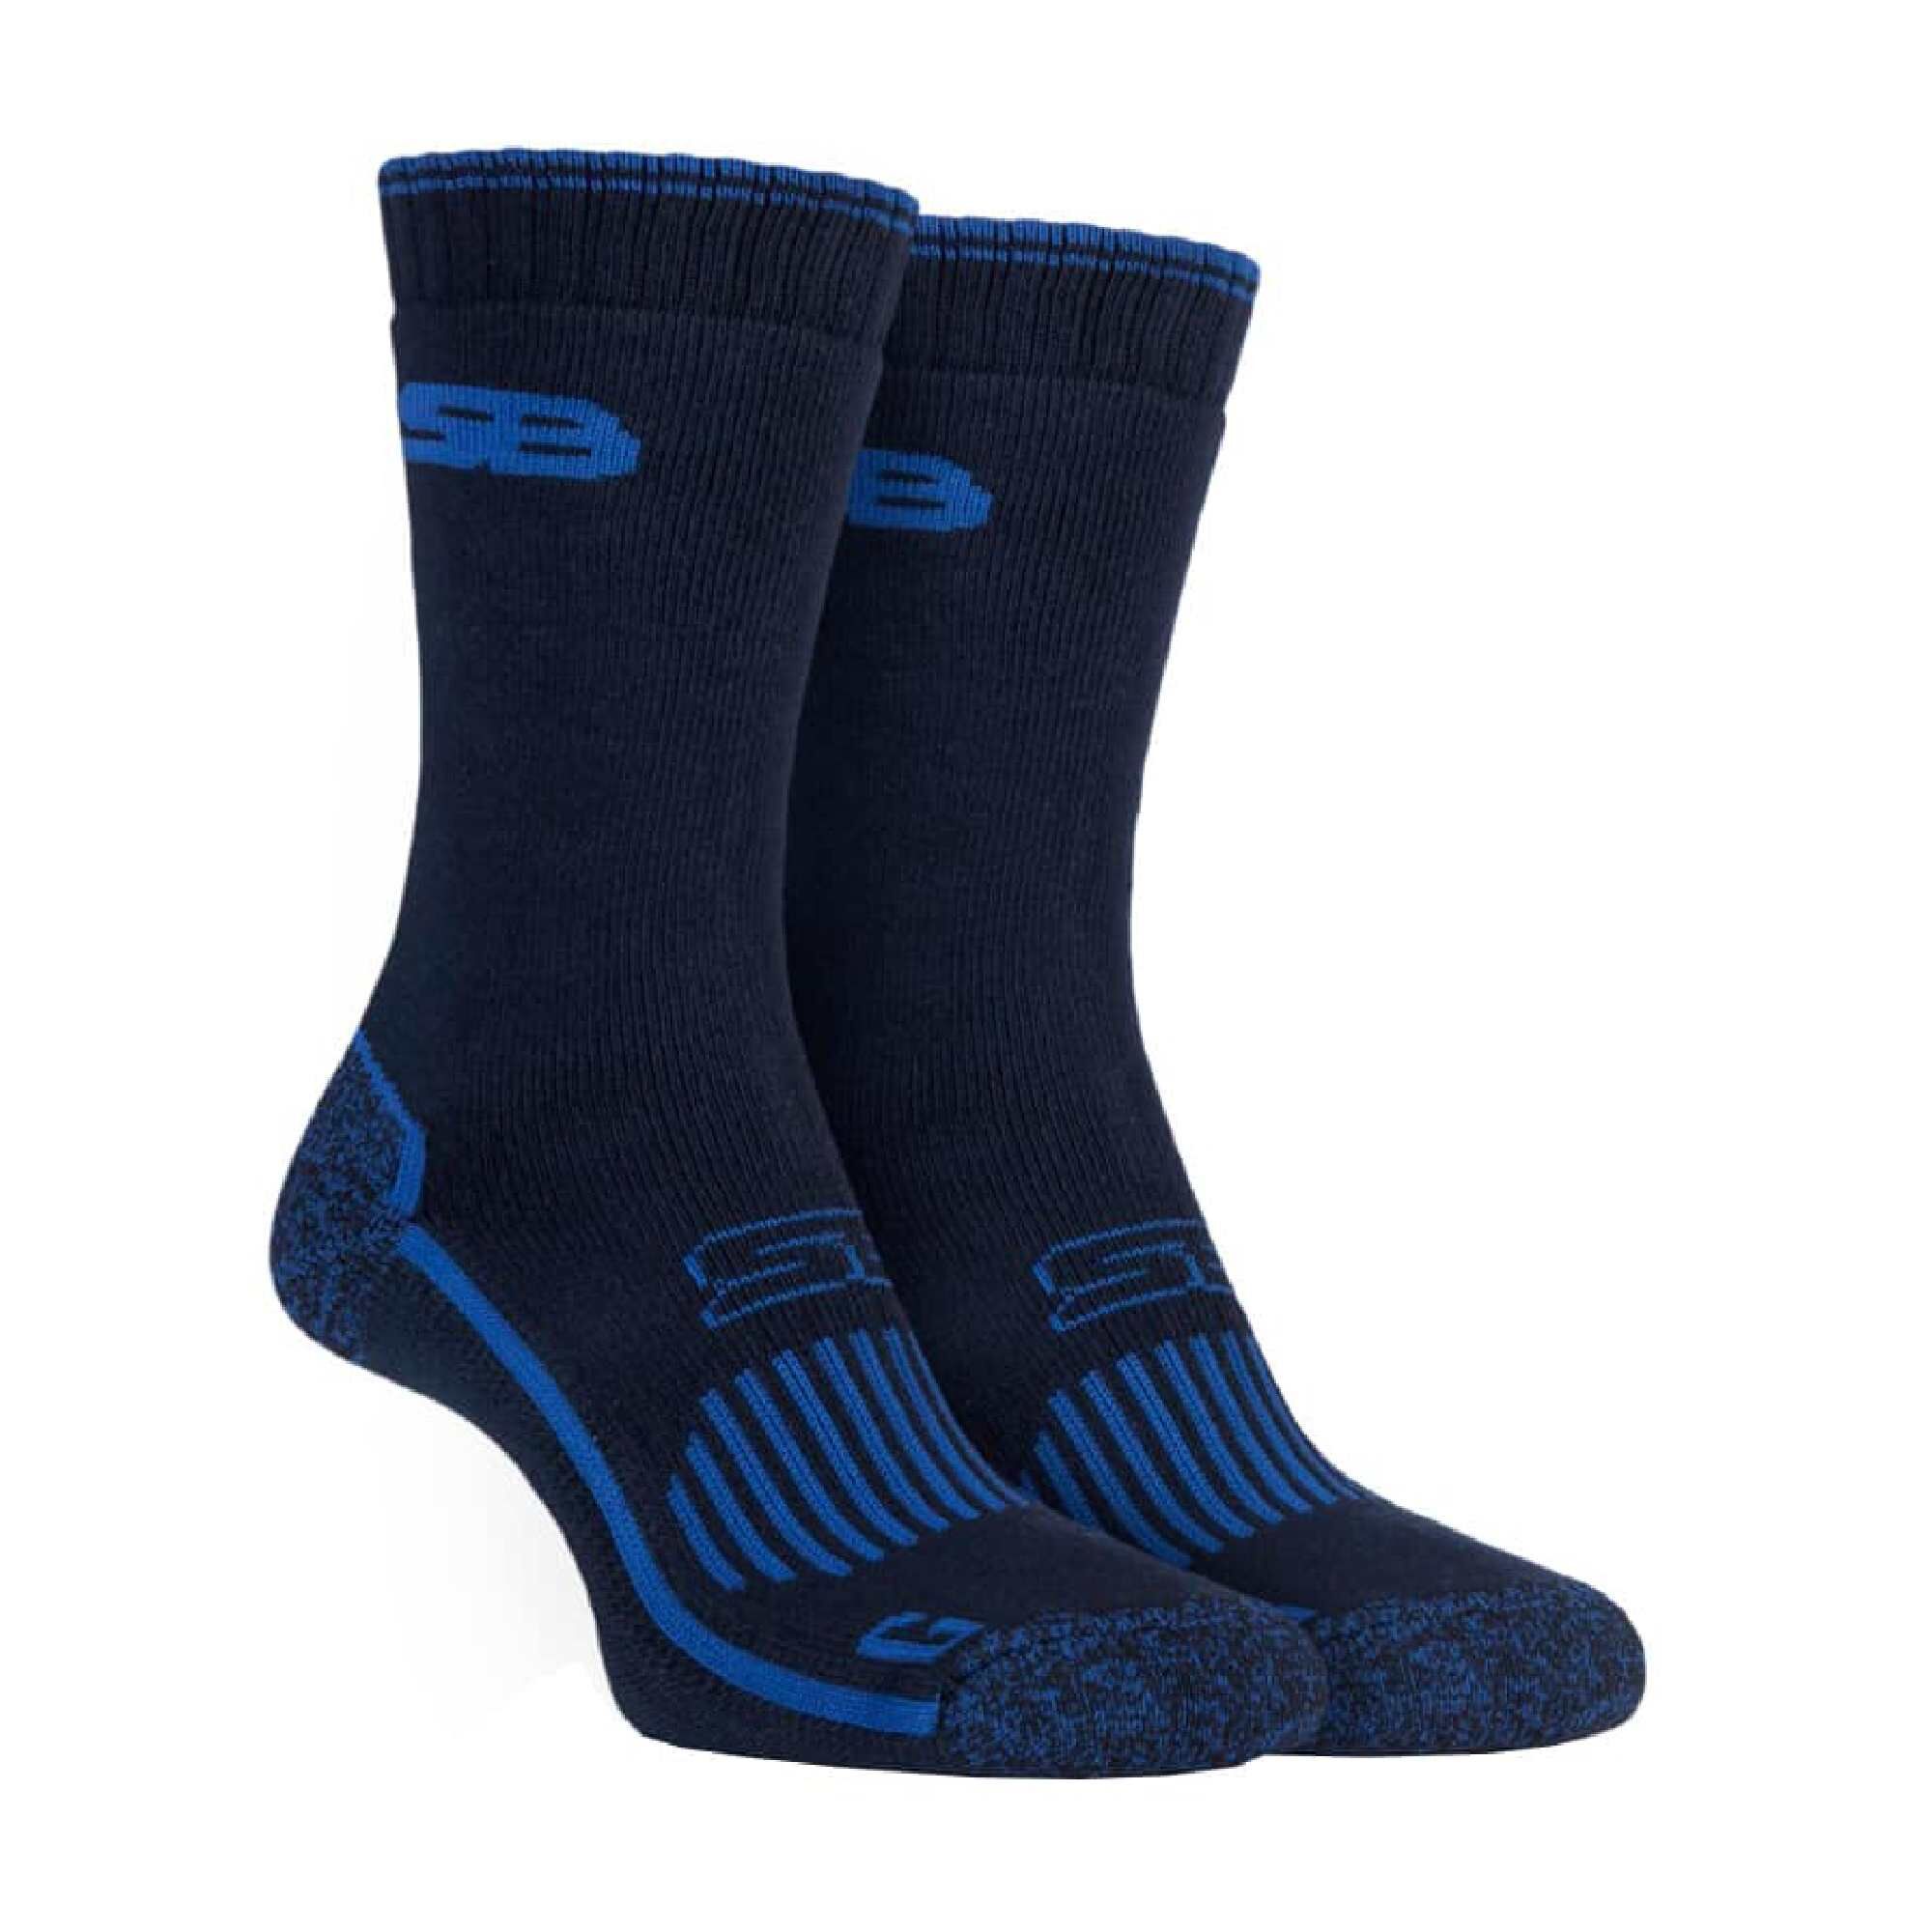 SockShop Heat Holders Reinforced Socks Black Size 12-14 - Screwfix